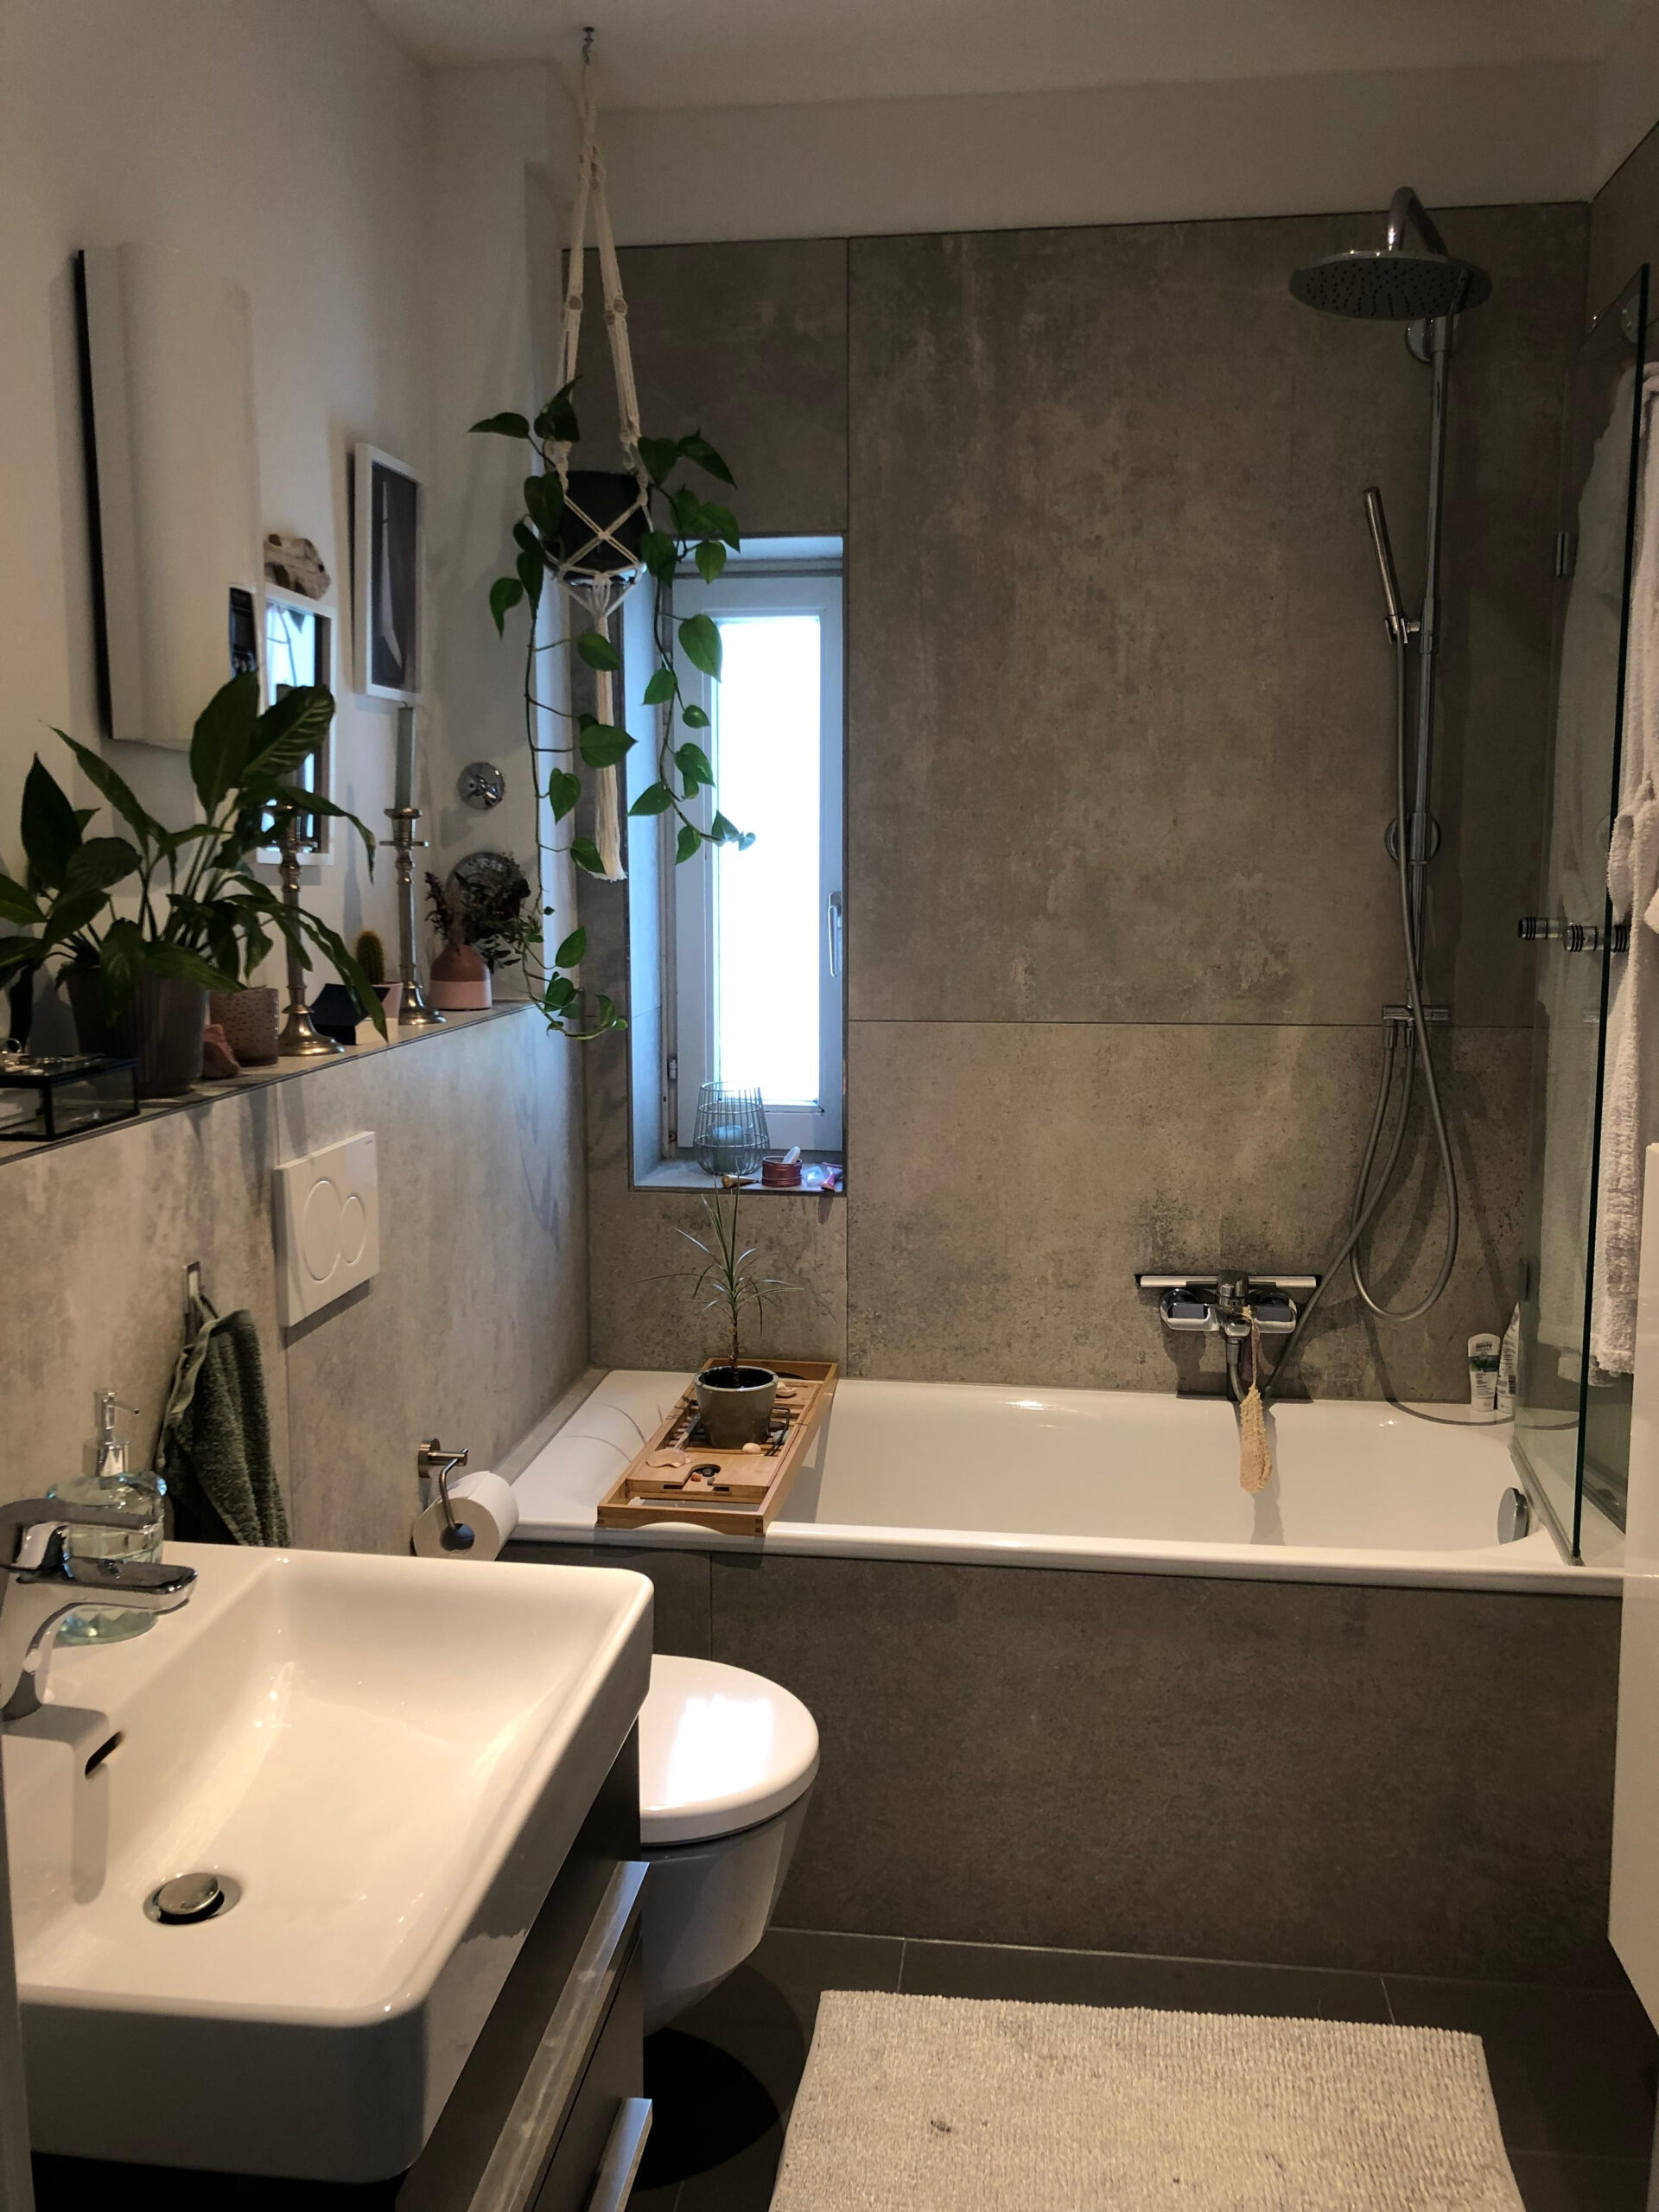 Die Perfekte Badezimmer-Deko: Lass Dich Inspirieren! with regard to Badezimmer Deko Vintage